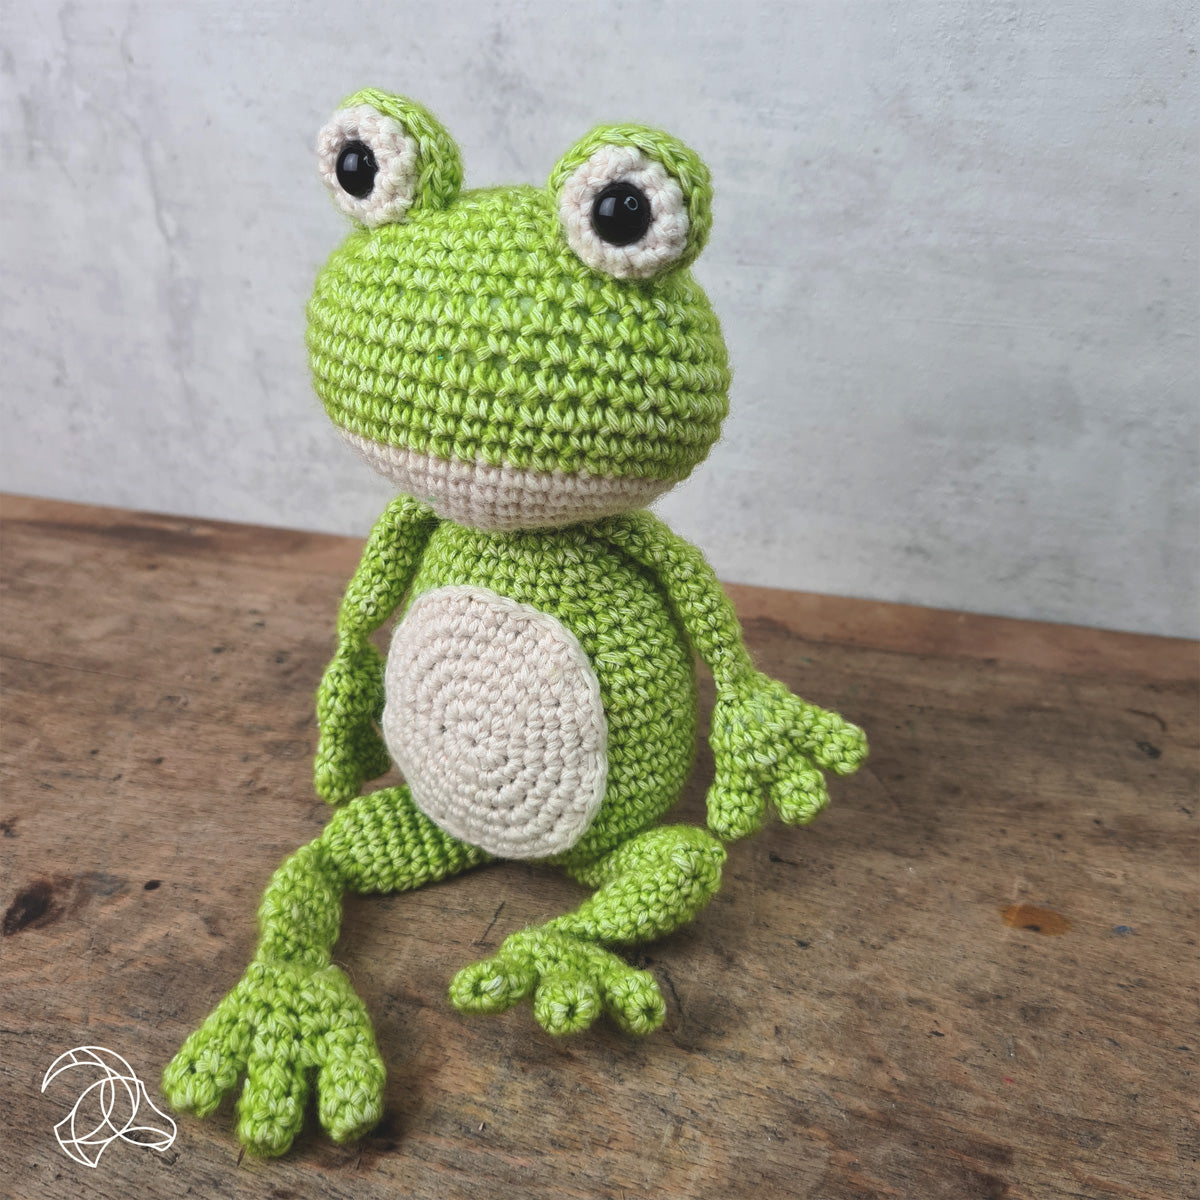 Vinny the Frog Crochet Kit from Hardicraft